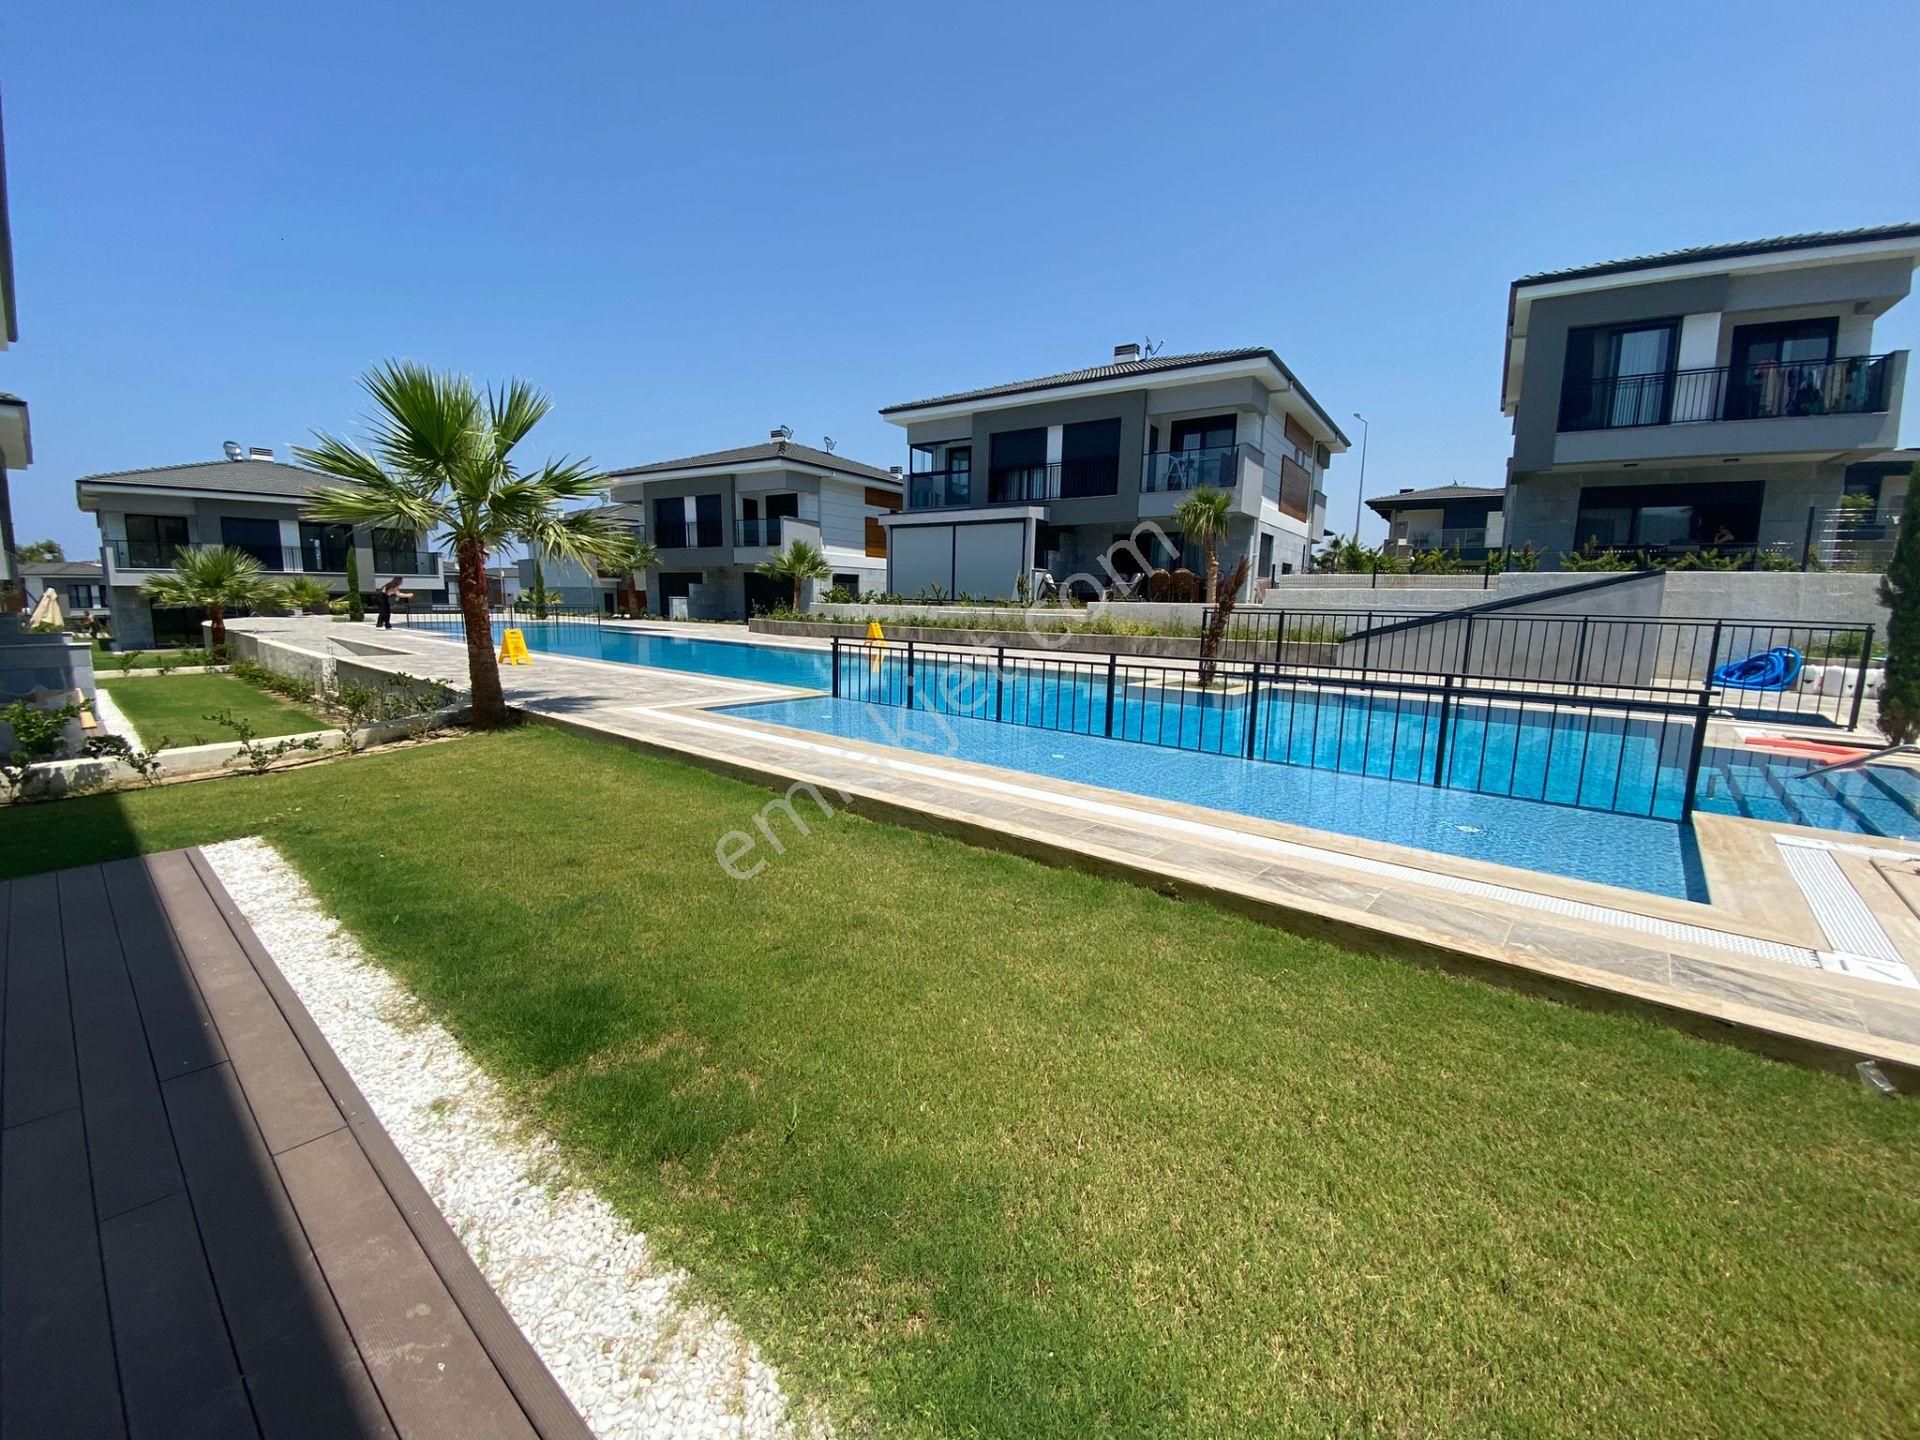 Kuşadası Güzelçamlı Satılık Villa  Kuşadası'nda Denize Yakın Satılık 3+1 Villa